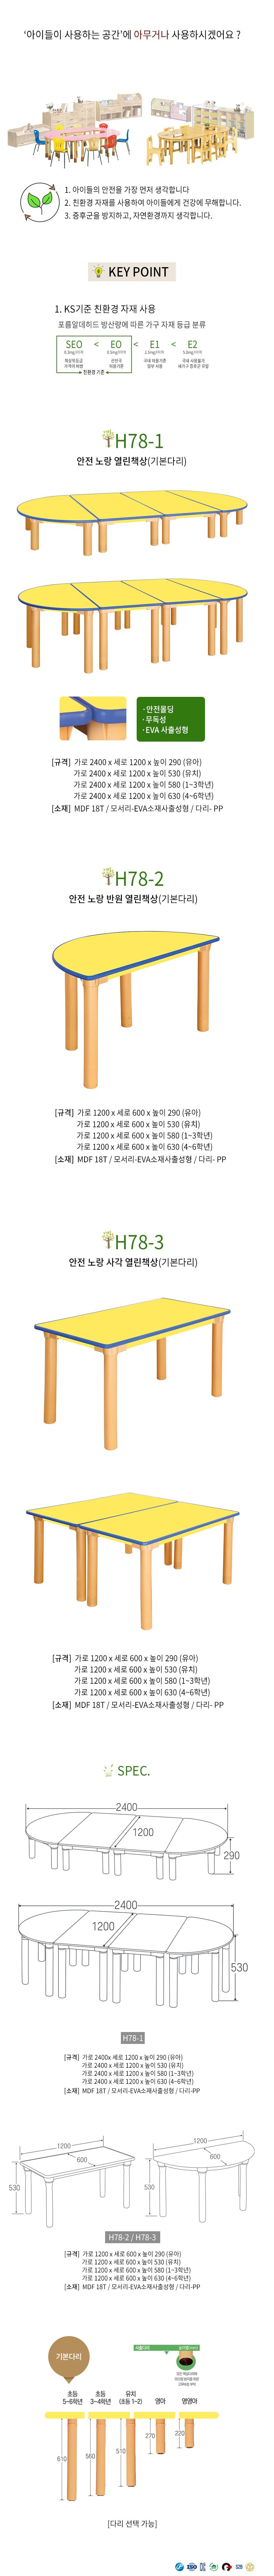 어린이 안전 노랑사각 열린 책상 H530 H78-3 